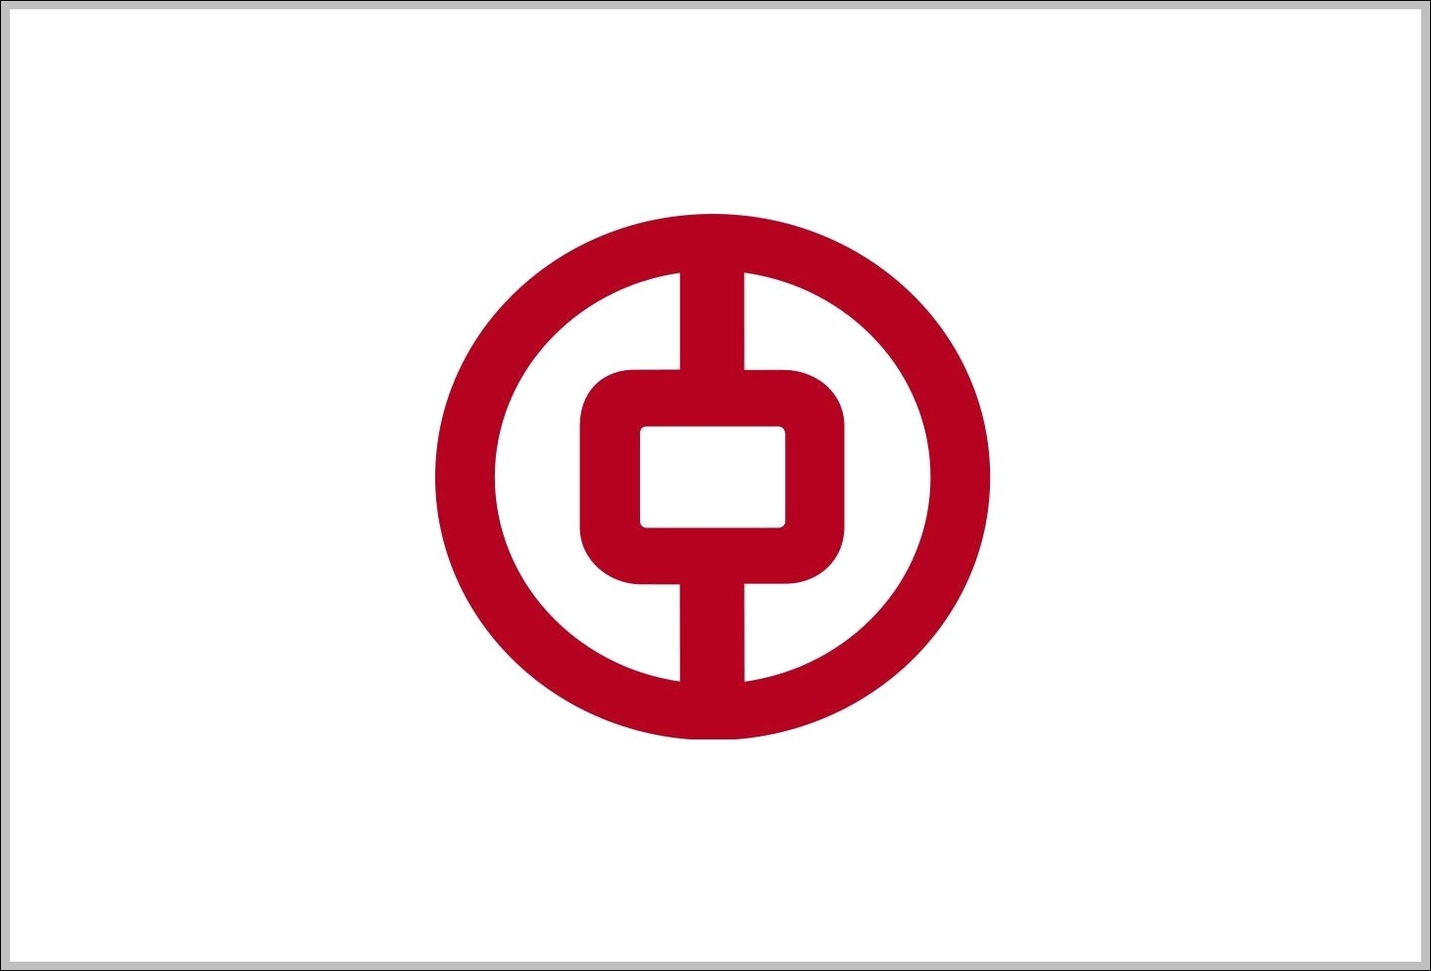 Bank of China logo 2